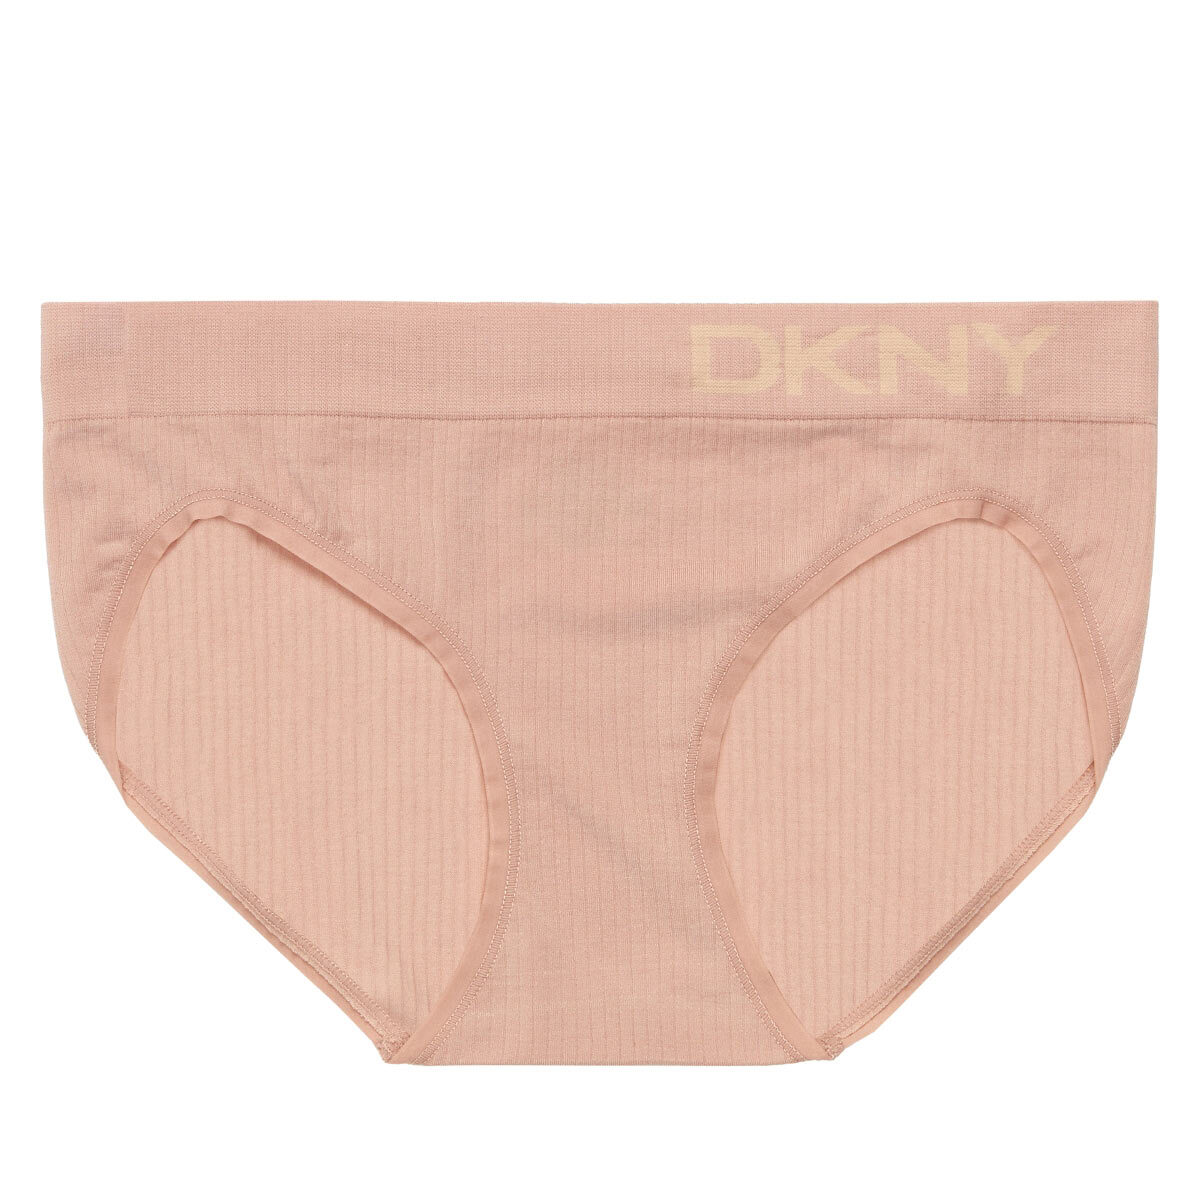 DKNY Women's Seamless Rib Knit 4 Pack Bikini Brief in Pin